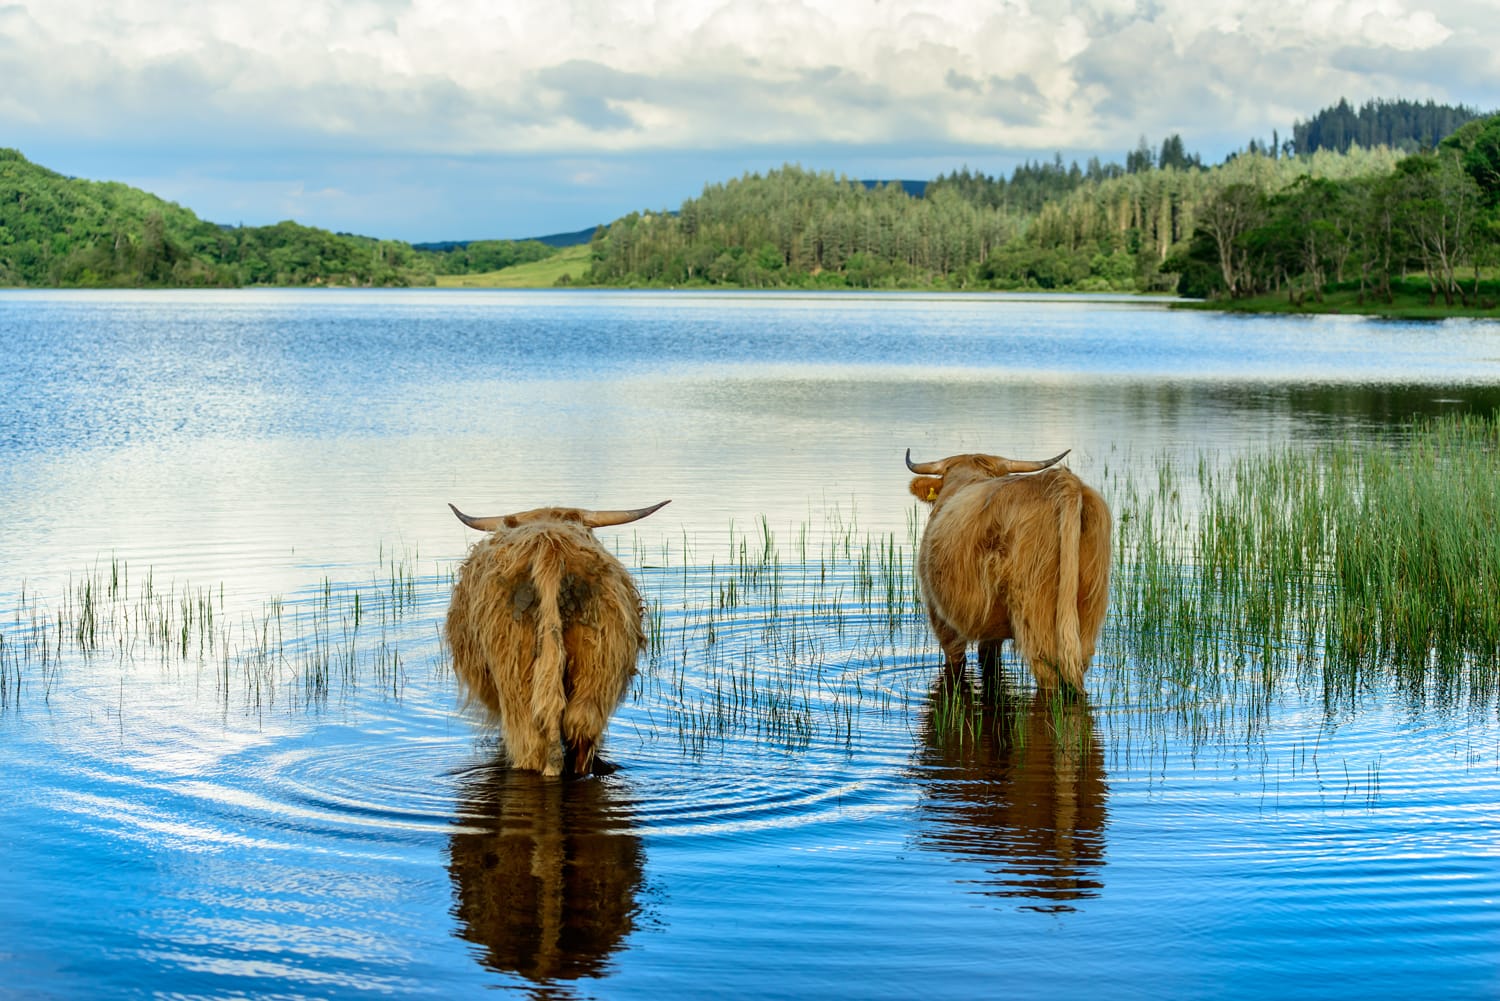 Dos vedells de les Highlands relaxant-se al llac Archay al llac Lomond i al parc nacional dels Trossachs.